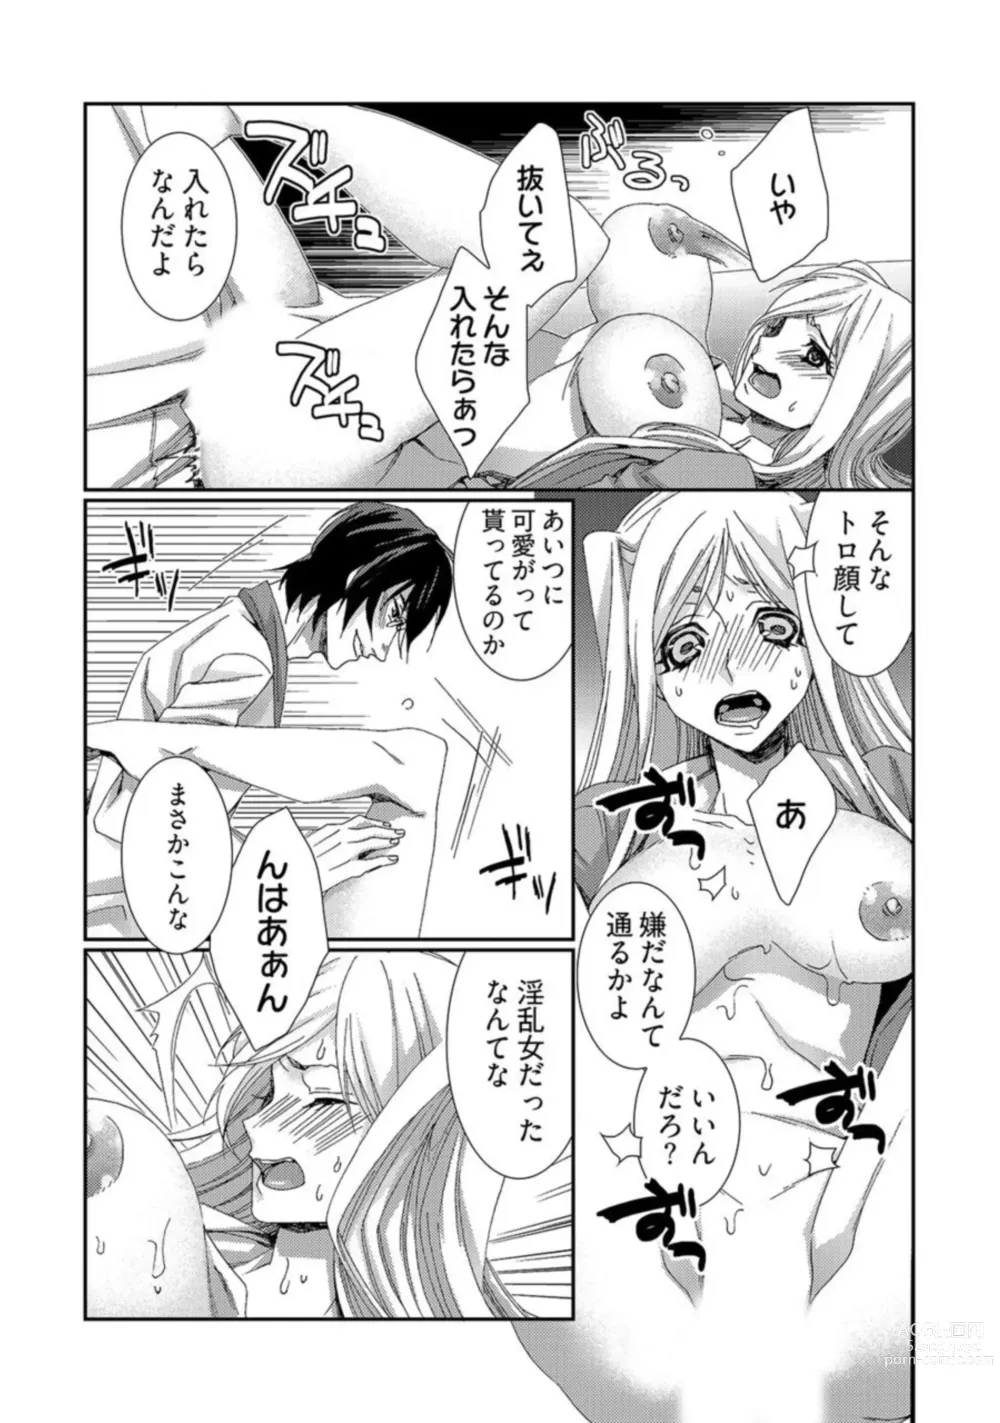 Page 19 of manga Jikan o Ayatsuri Mukyoka Tanetsuke - Shojo kara Ninshin made Mugen Loop Vol. 2